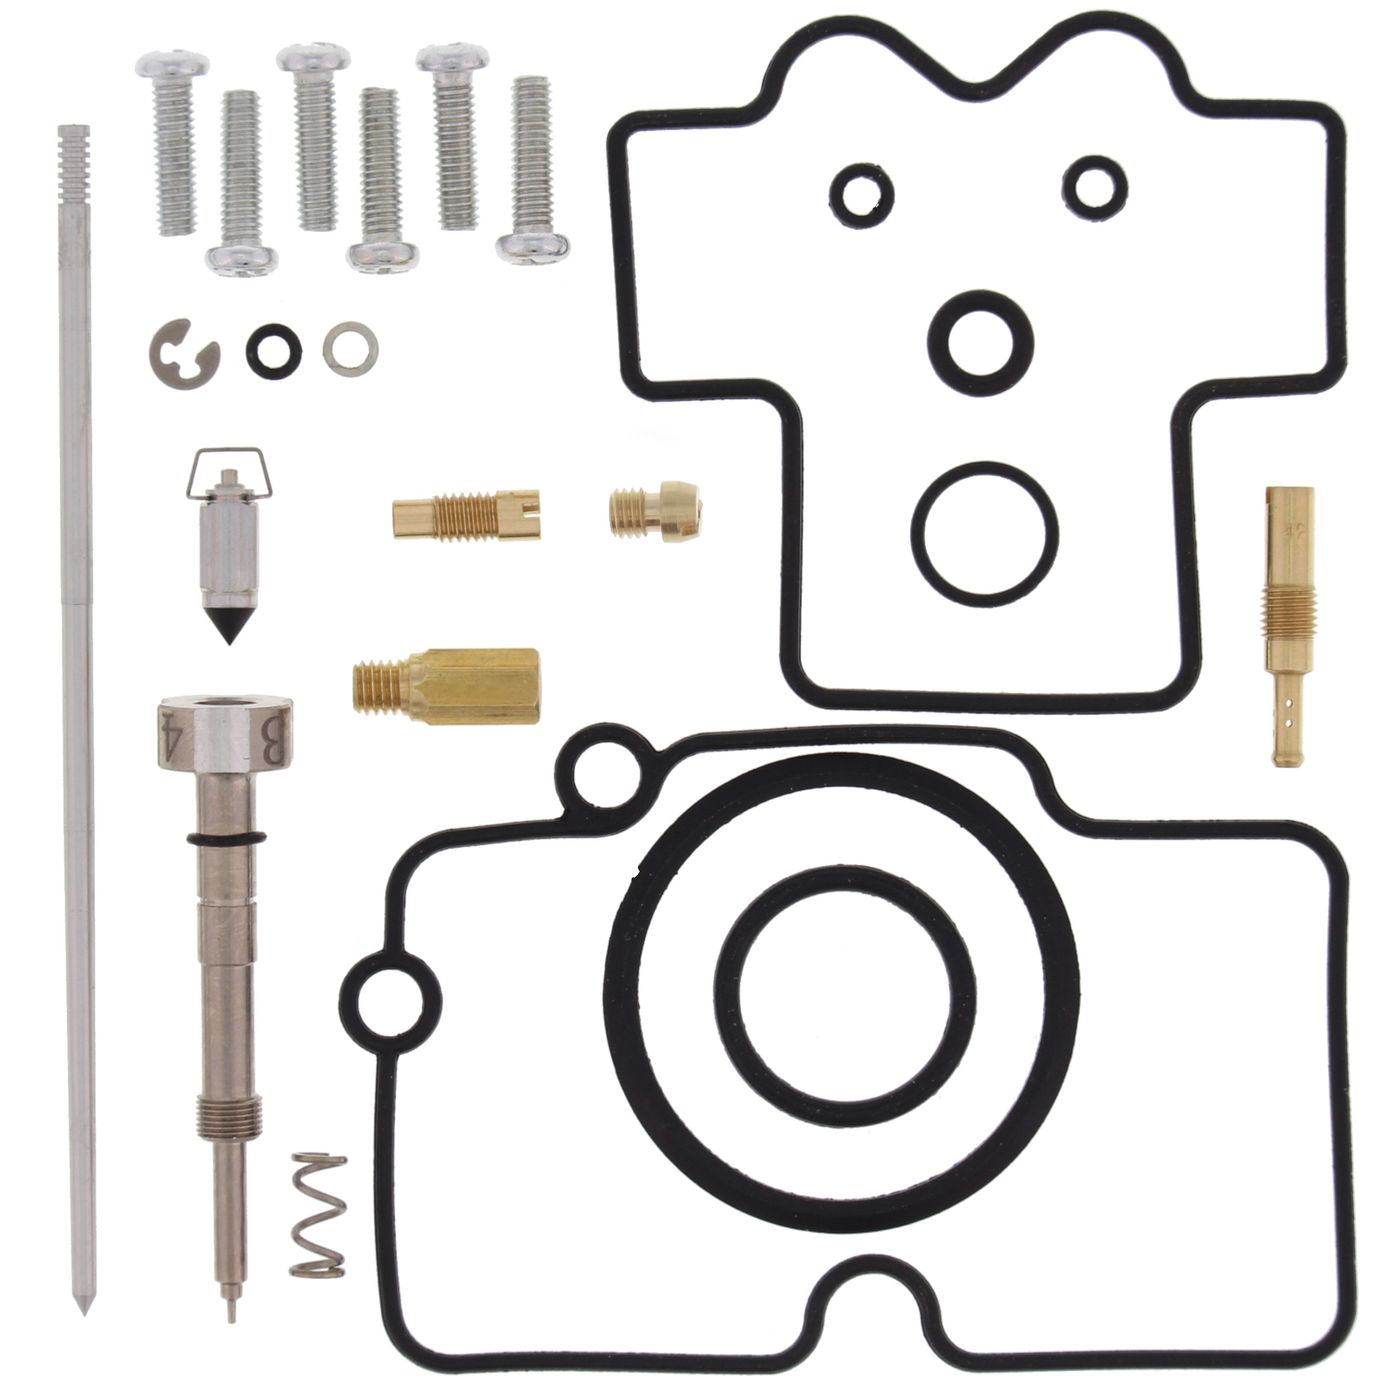 Wrp Carb Repair Kits - WRP261272 image